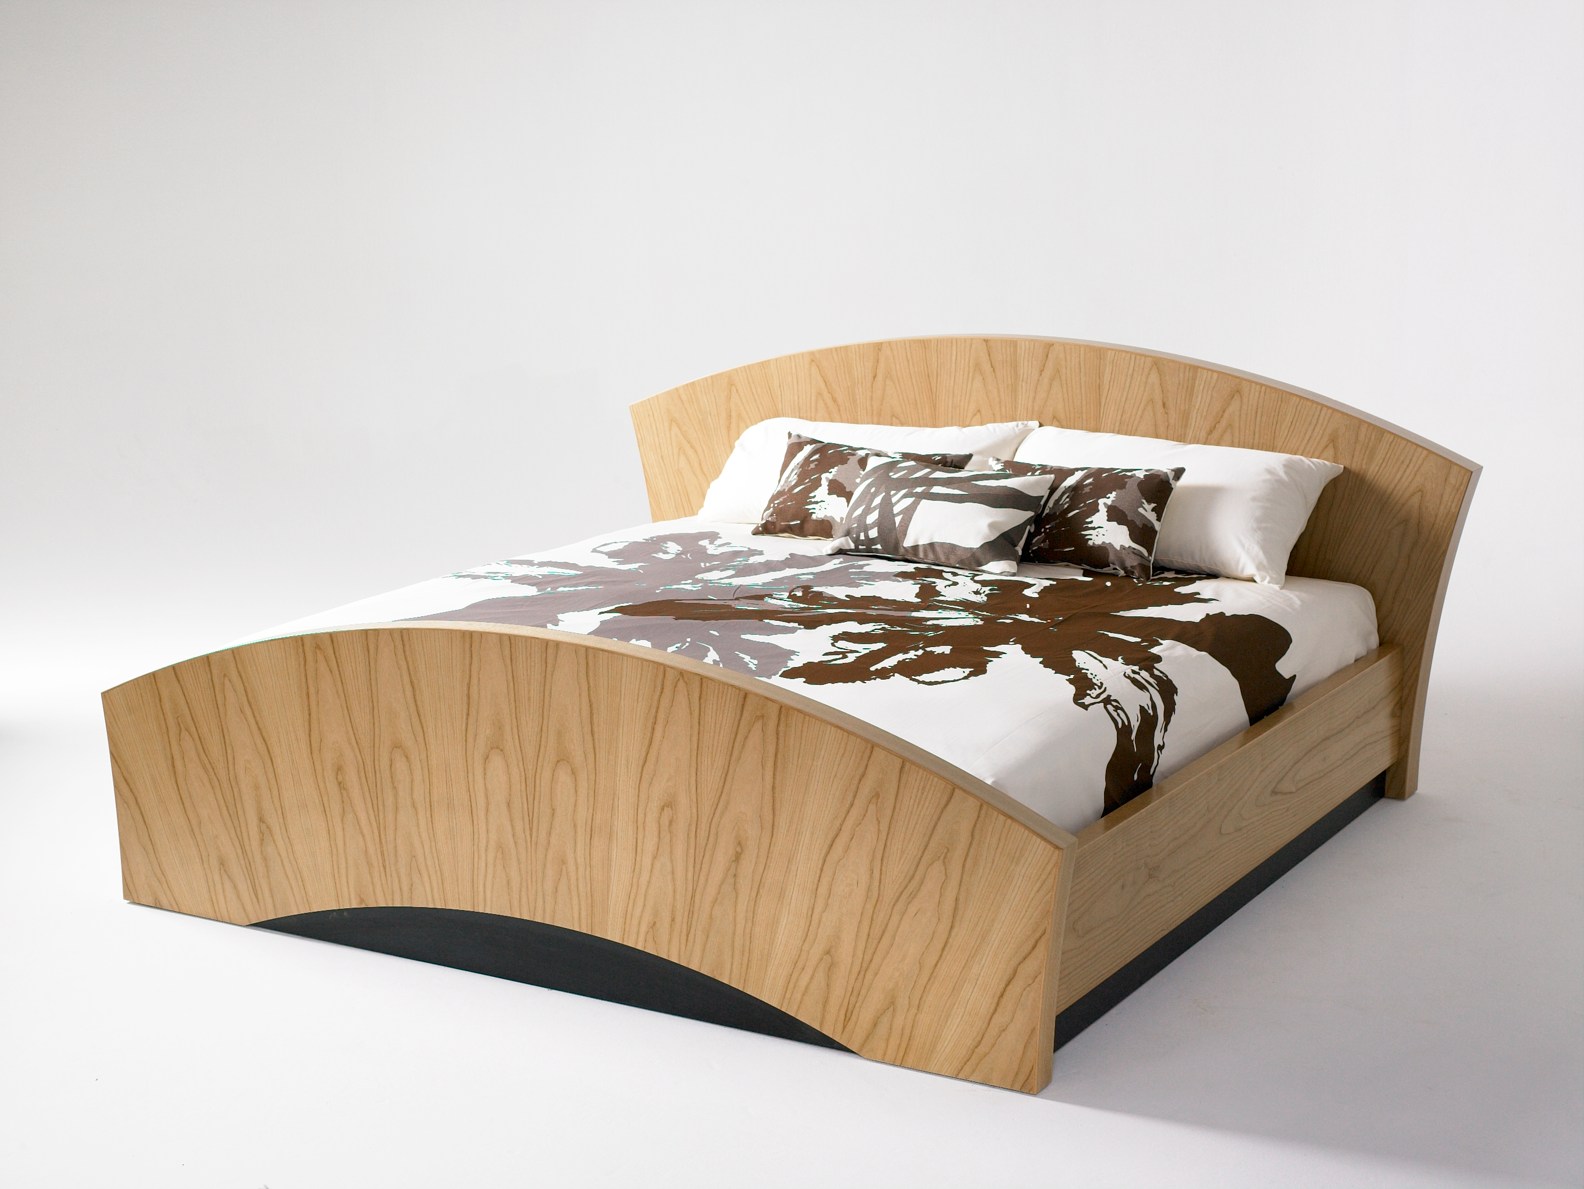 Wood Bed Furniture Design